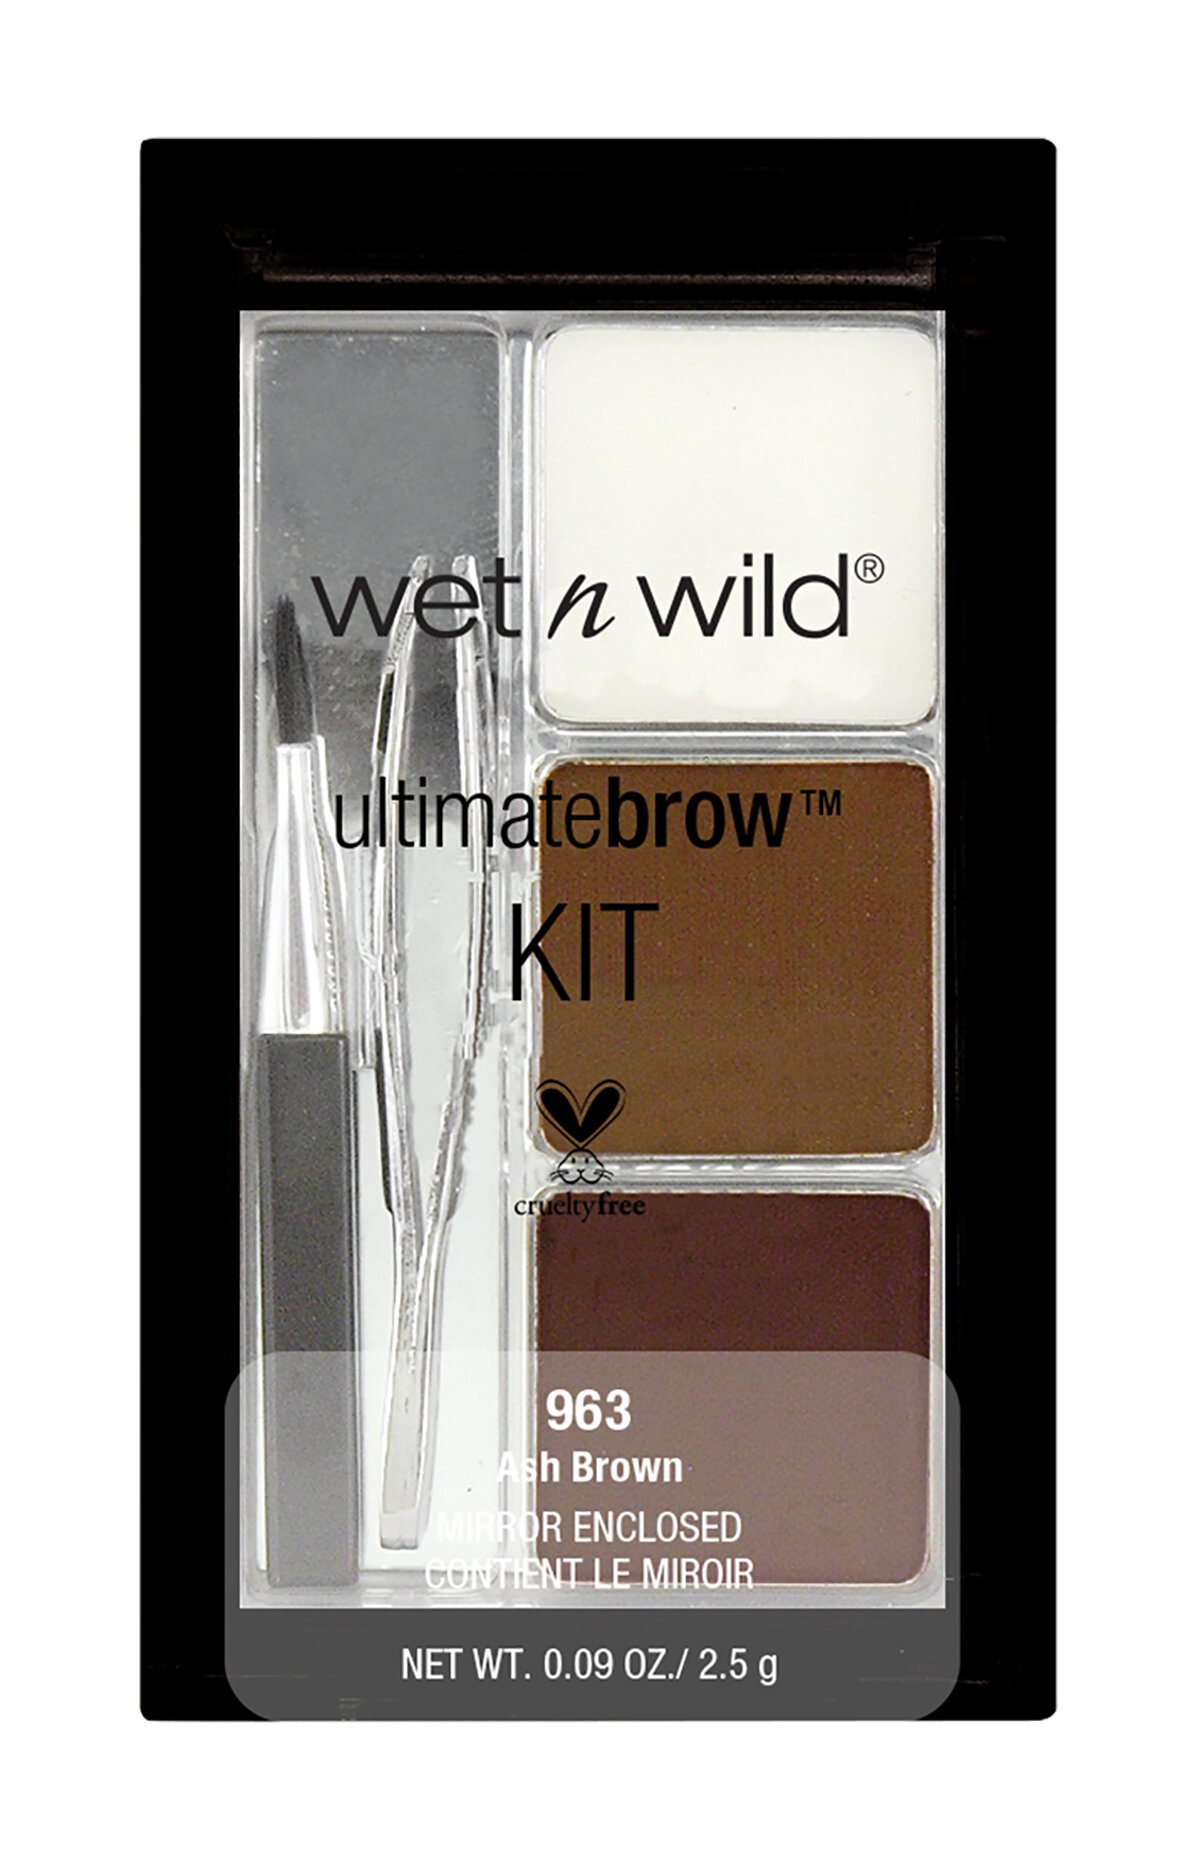 Wet-N-Wild Набор для бровей Ultimate Brow Kit, E963 ash brown (Wet-N-Wild, ) - фото №15